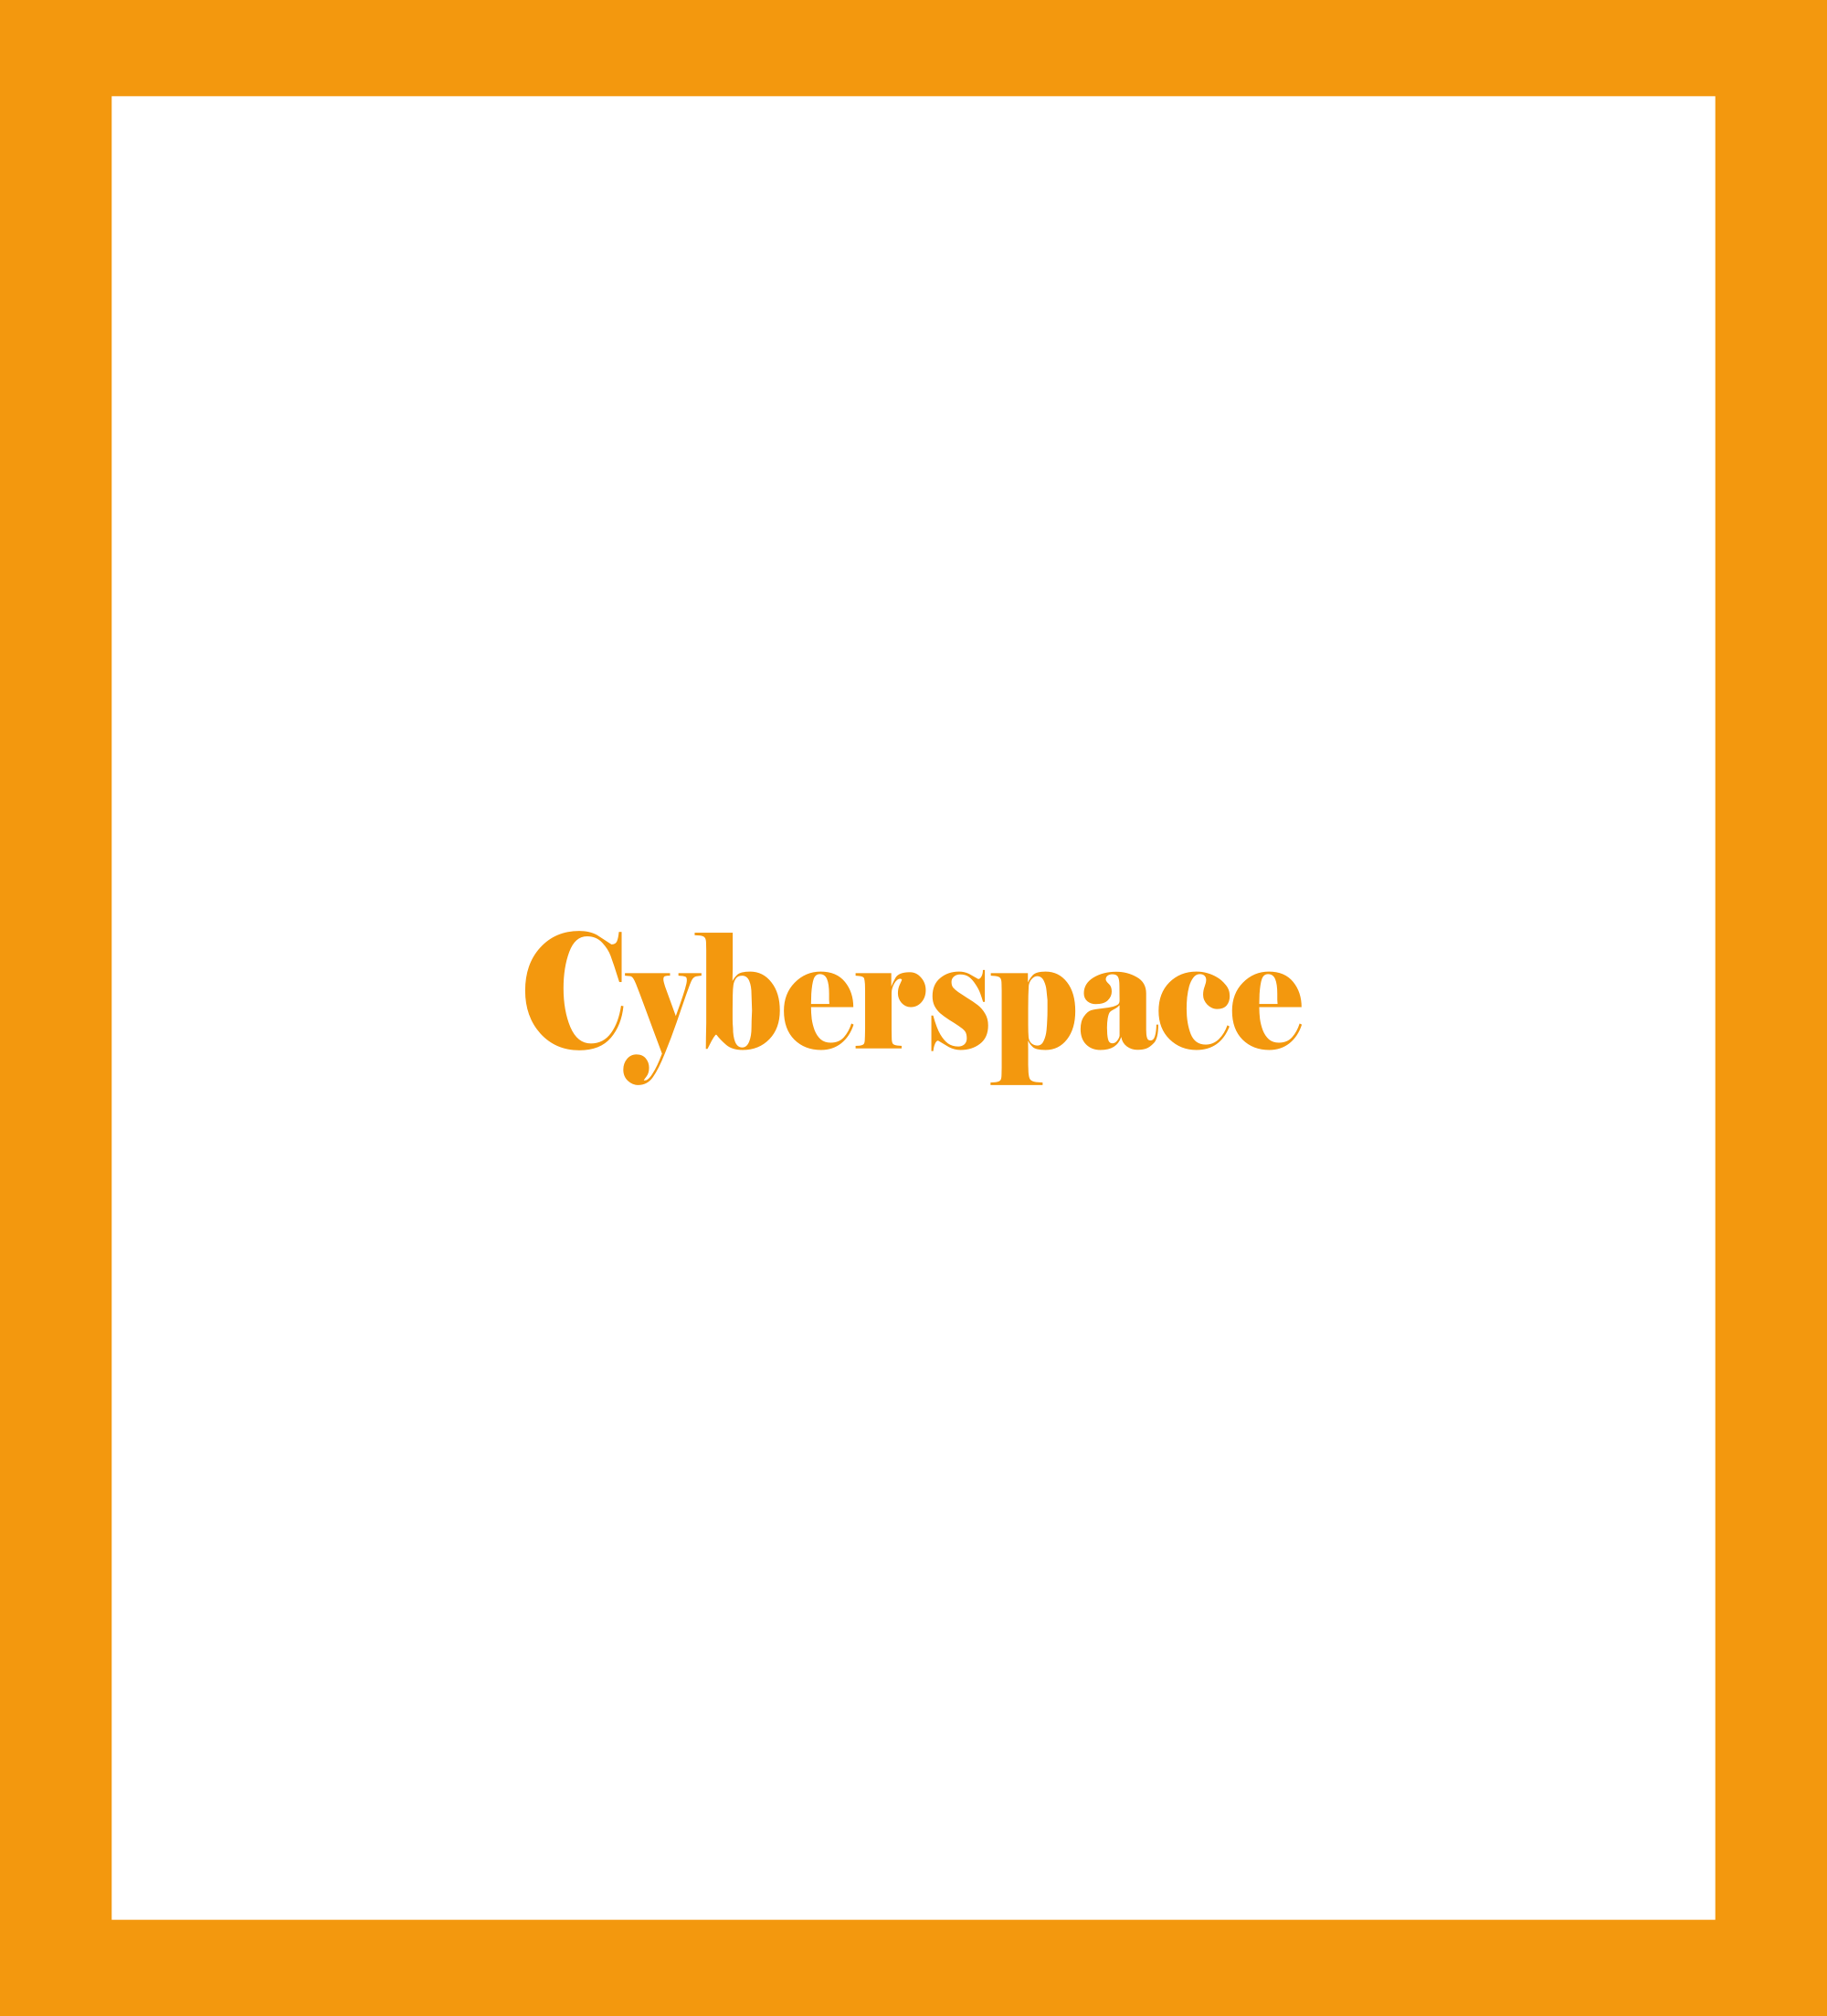 Caratula de Cyberspace (Ciberespacio) 